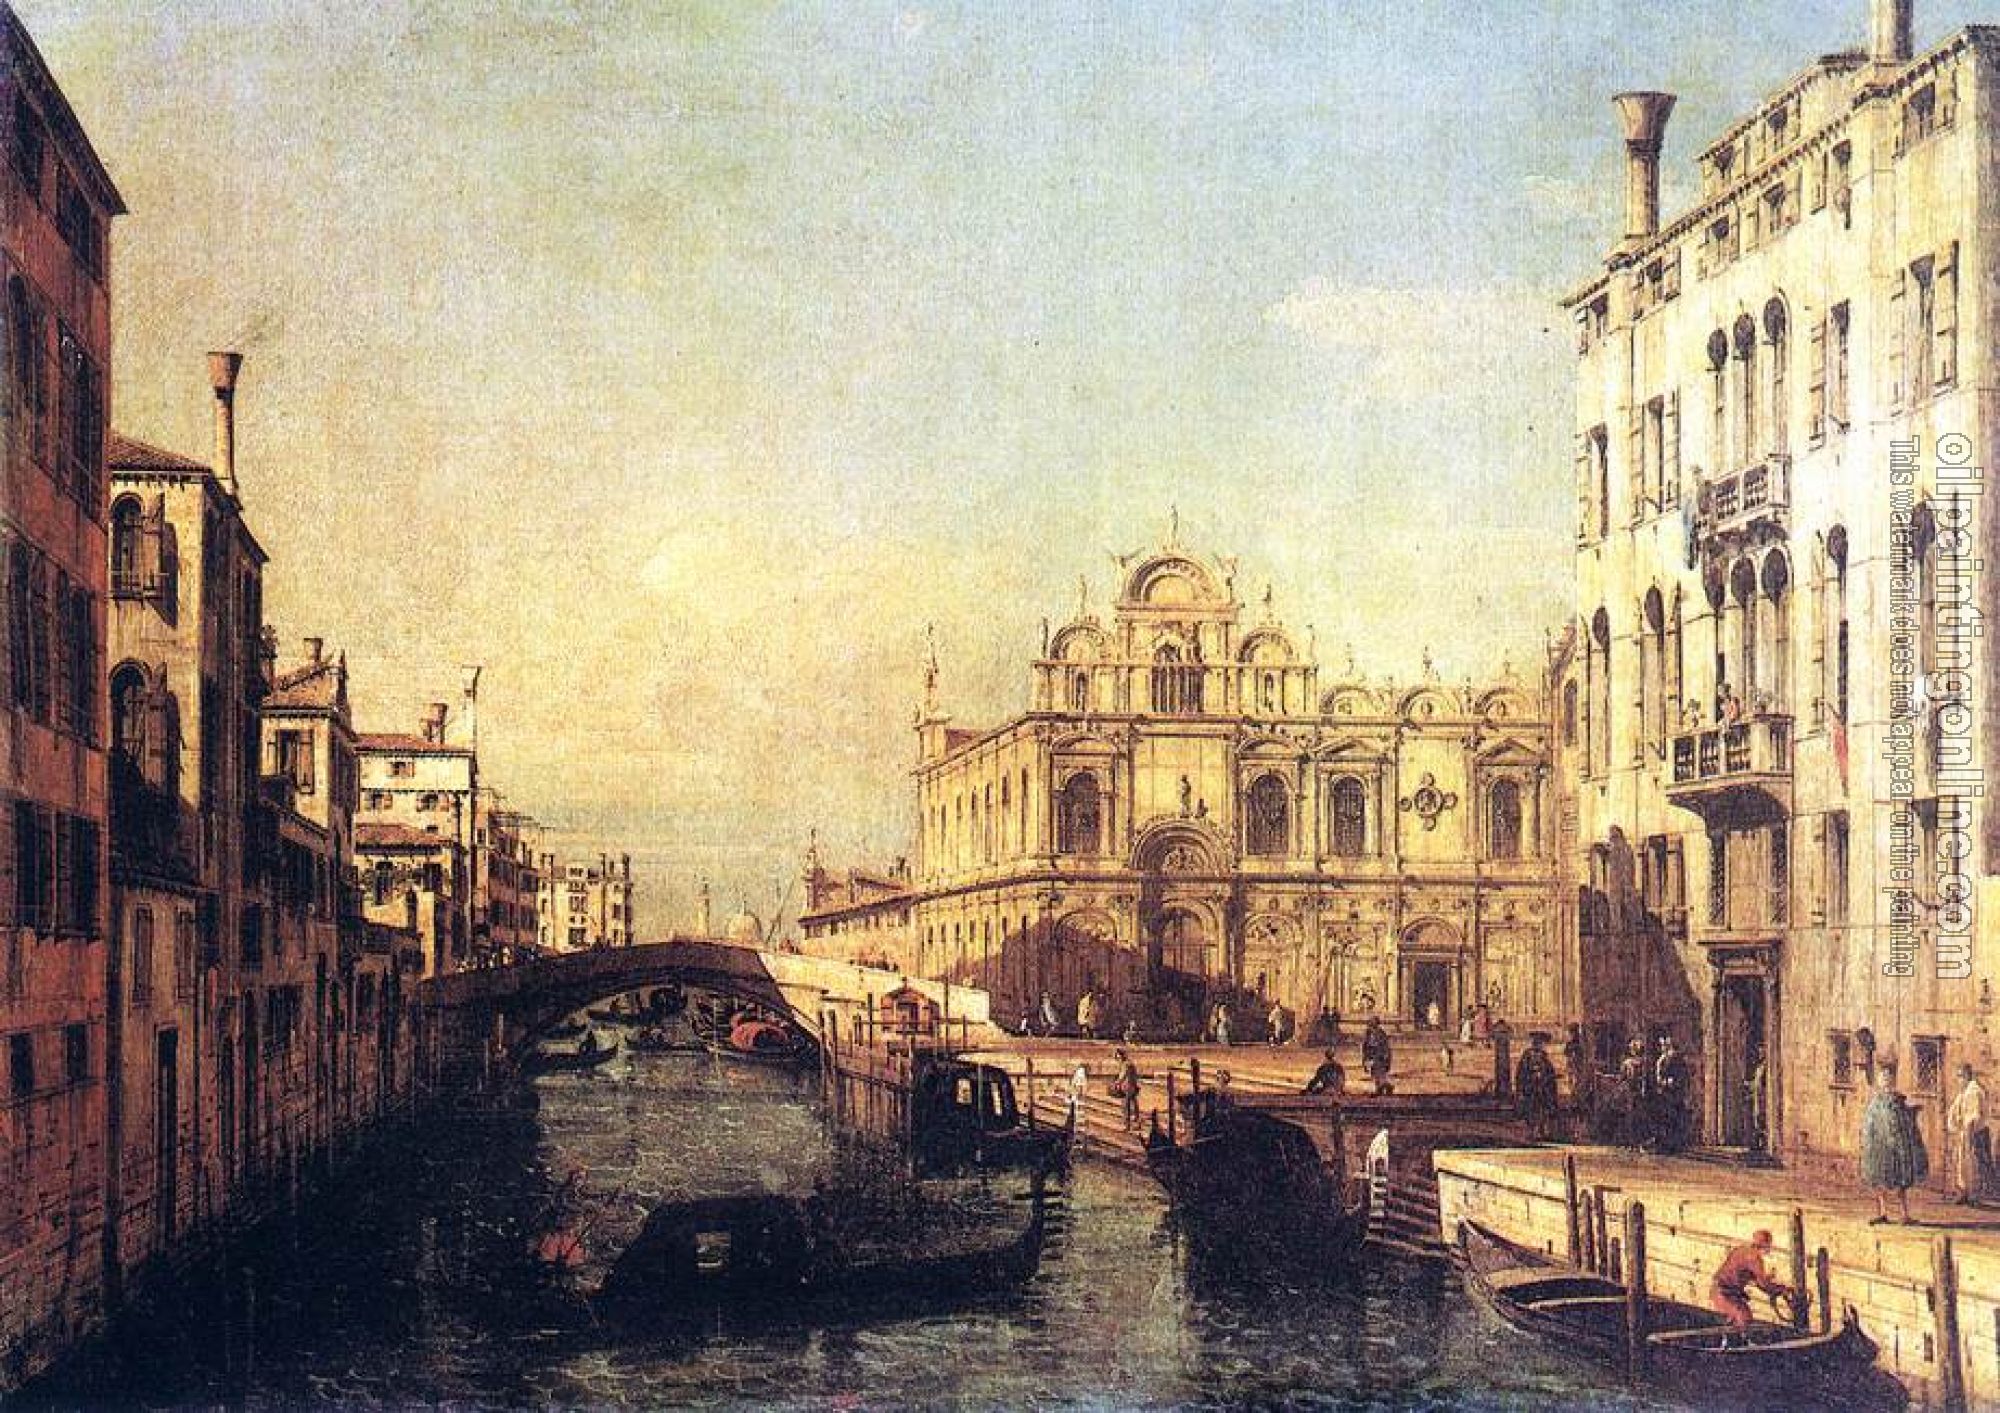 Bellotto, Bernardo - The Scuola of San Marco